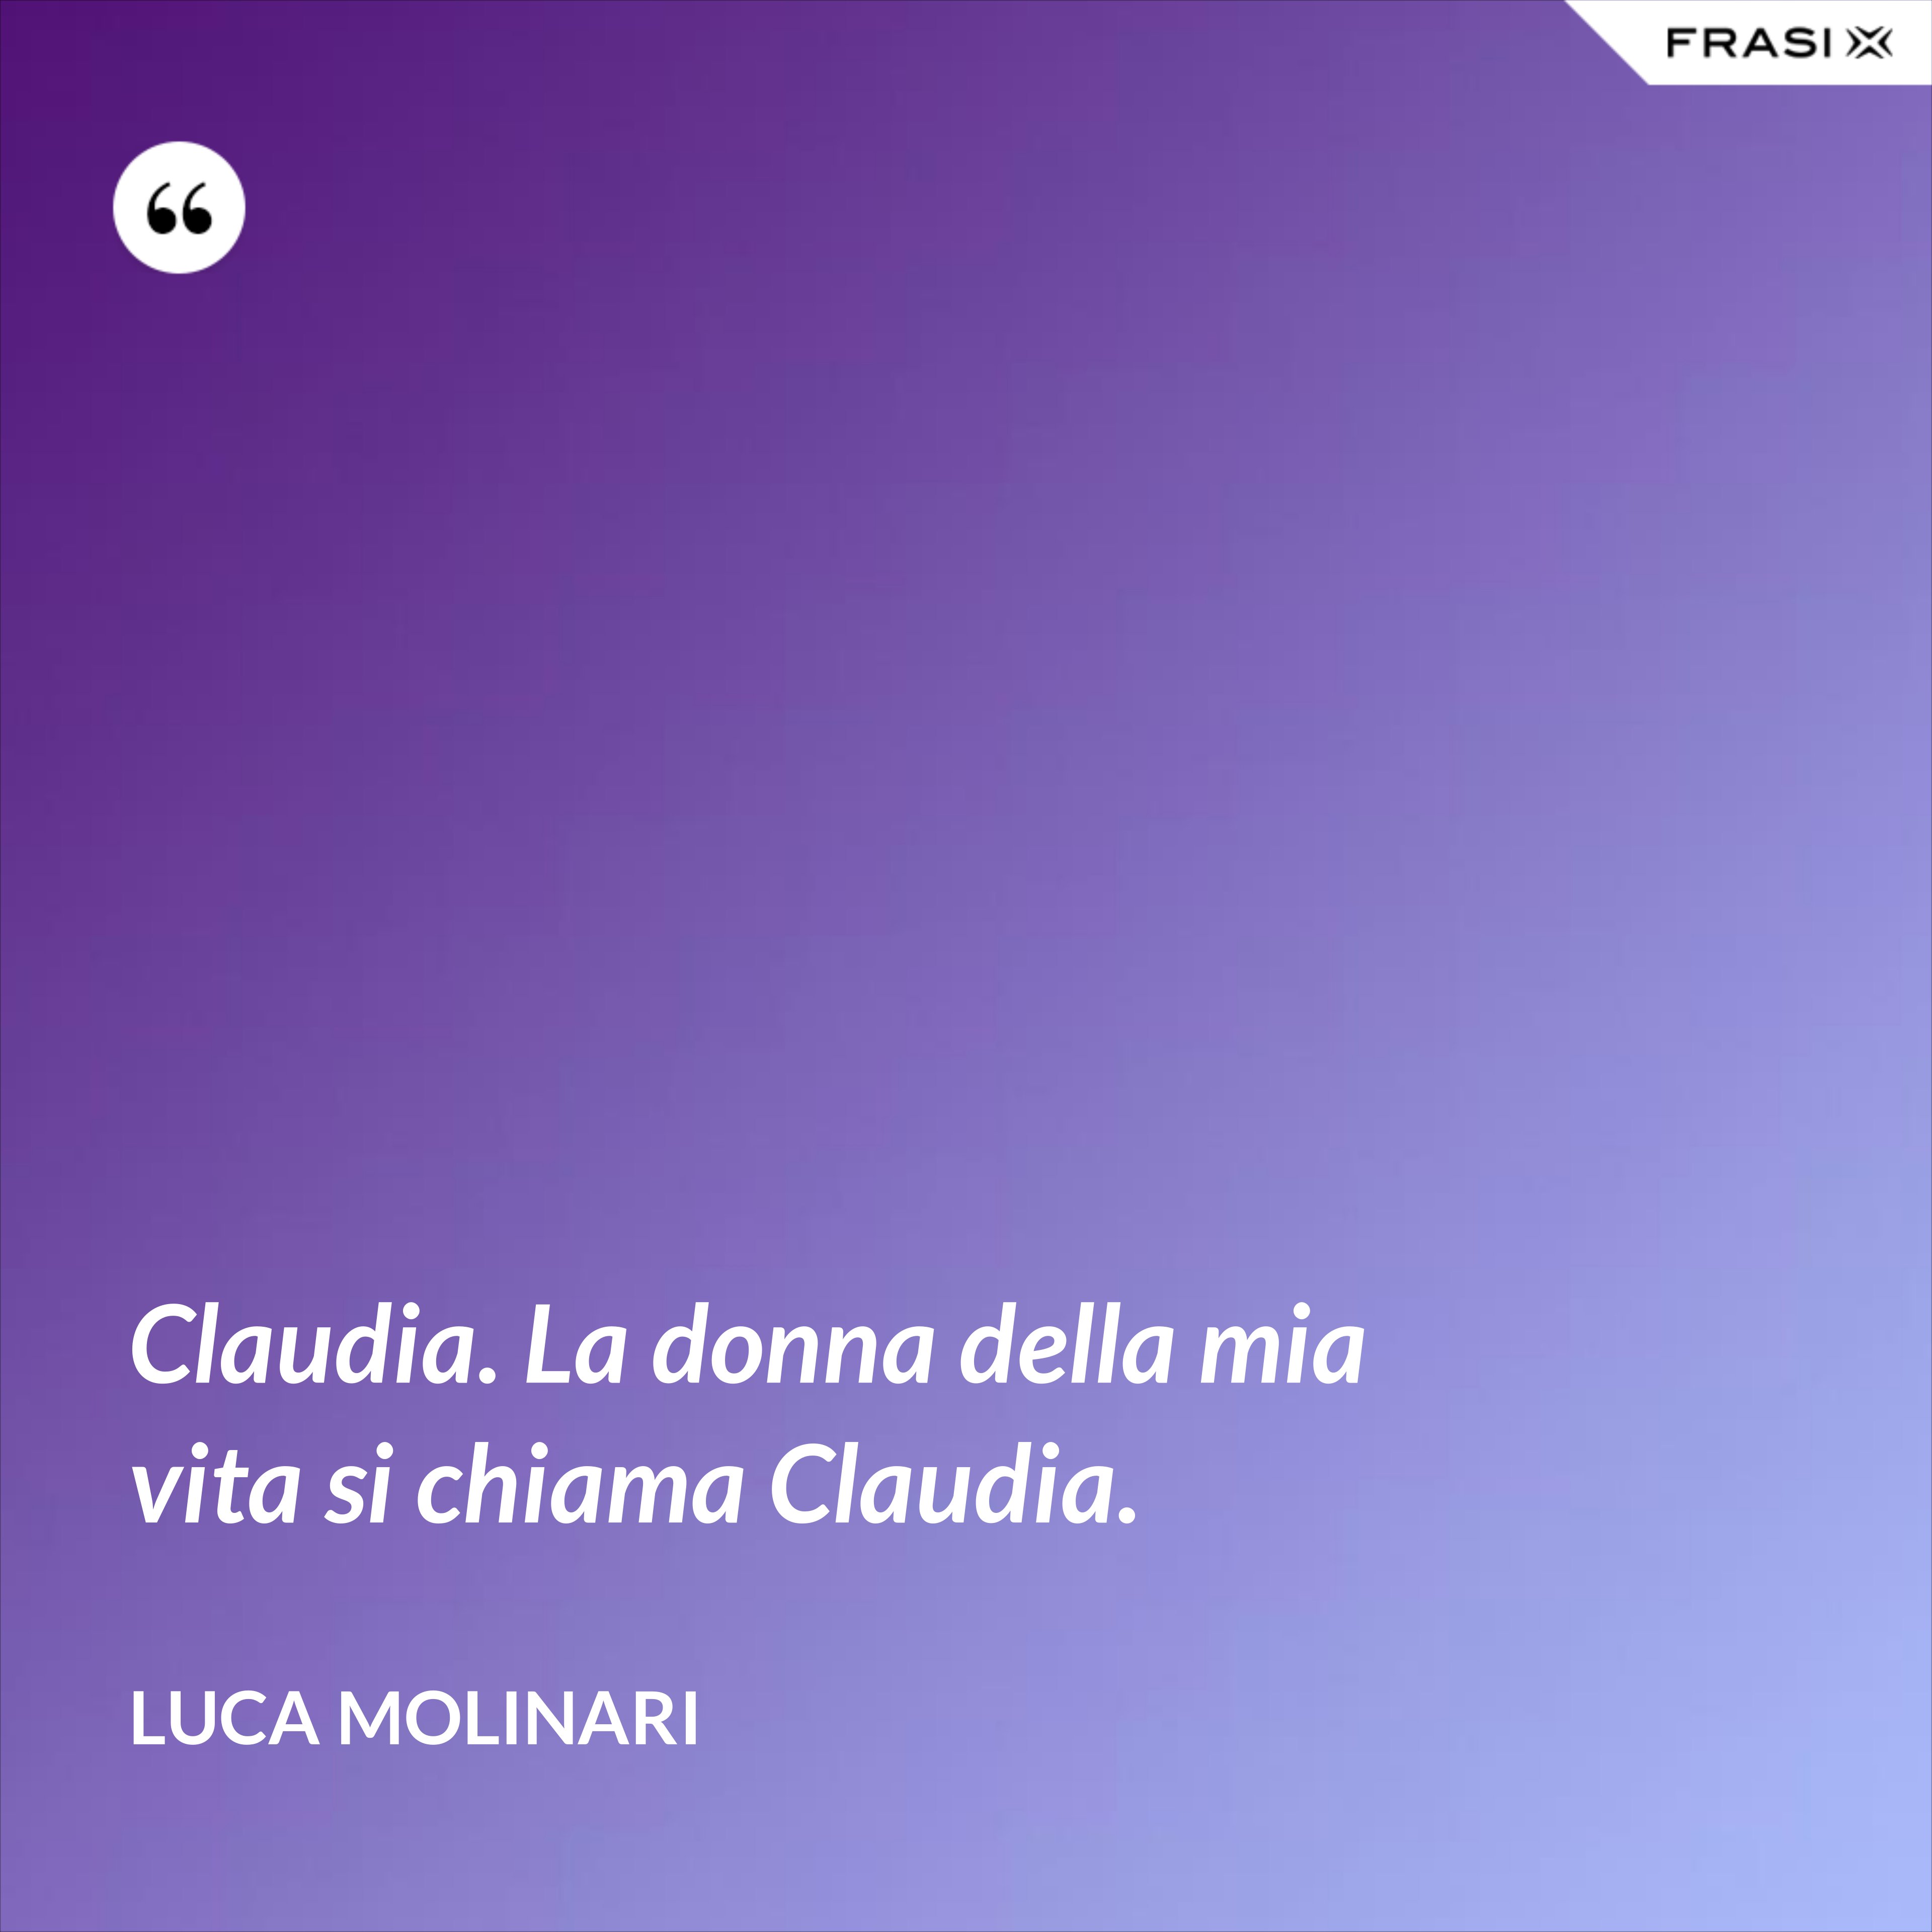 Claudia. La donna della mia vita si chiama Claudia. - Luca Molinari